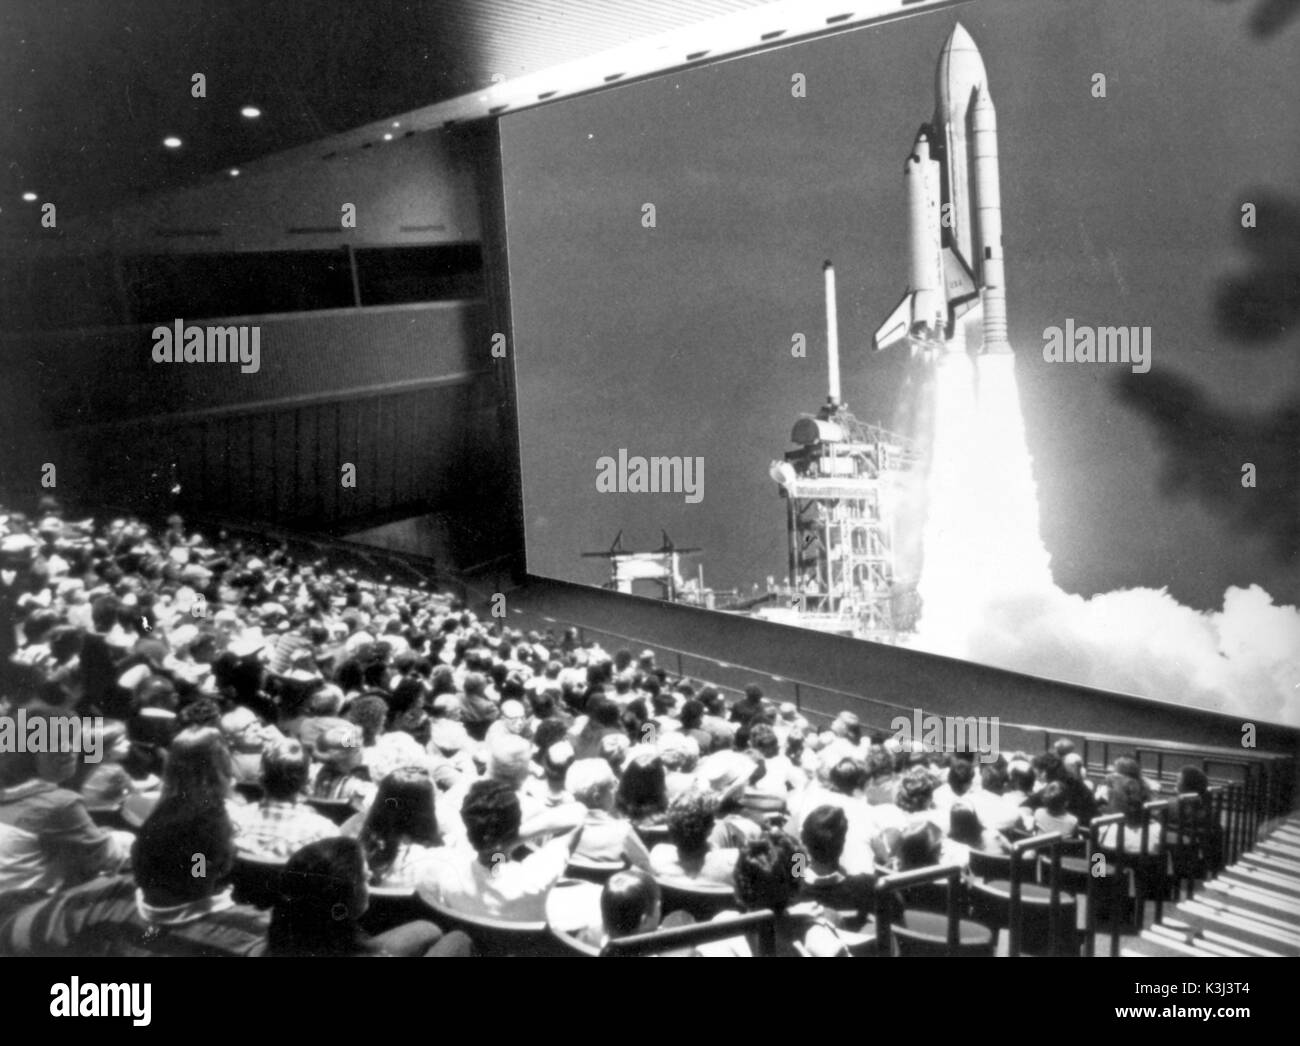 CINEMA IMAX, 7 piani a SPACEPORT USA il cinema è visto qui mostra una pellicola speciale che dà agli spettatori la sensazione di un effettivo caricamento verticale Foto Stock